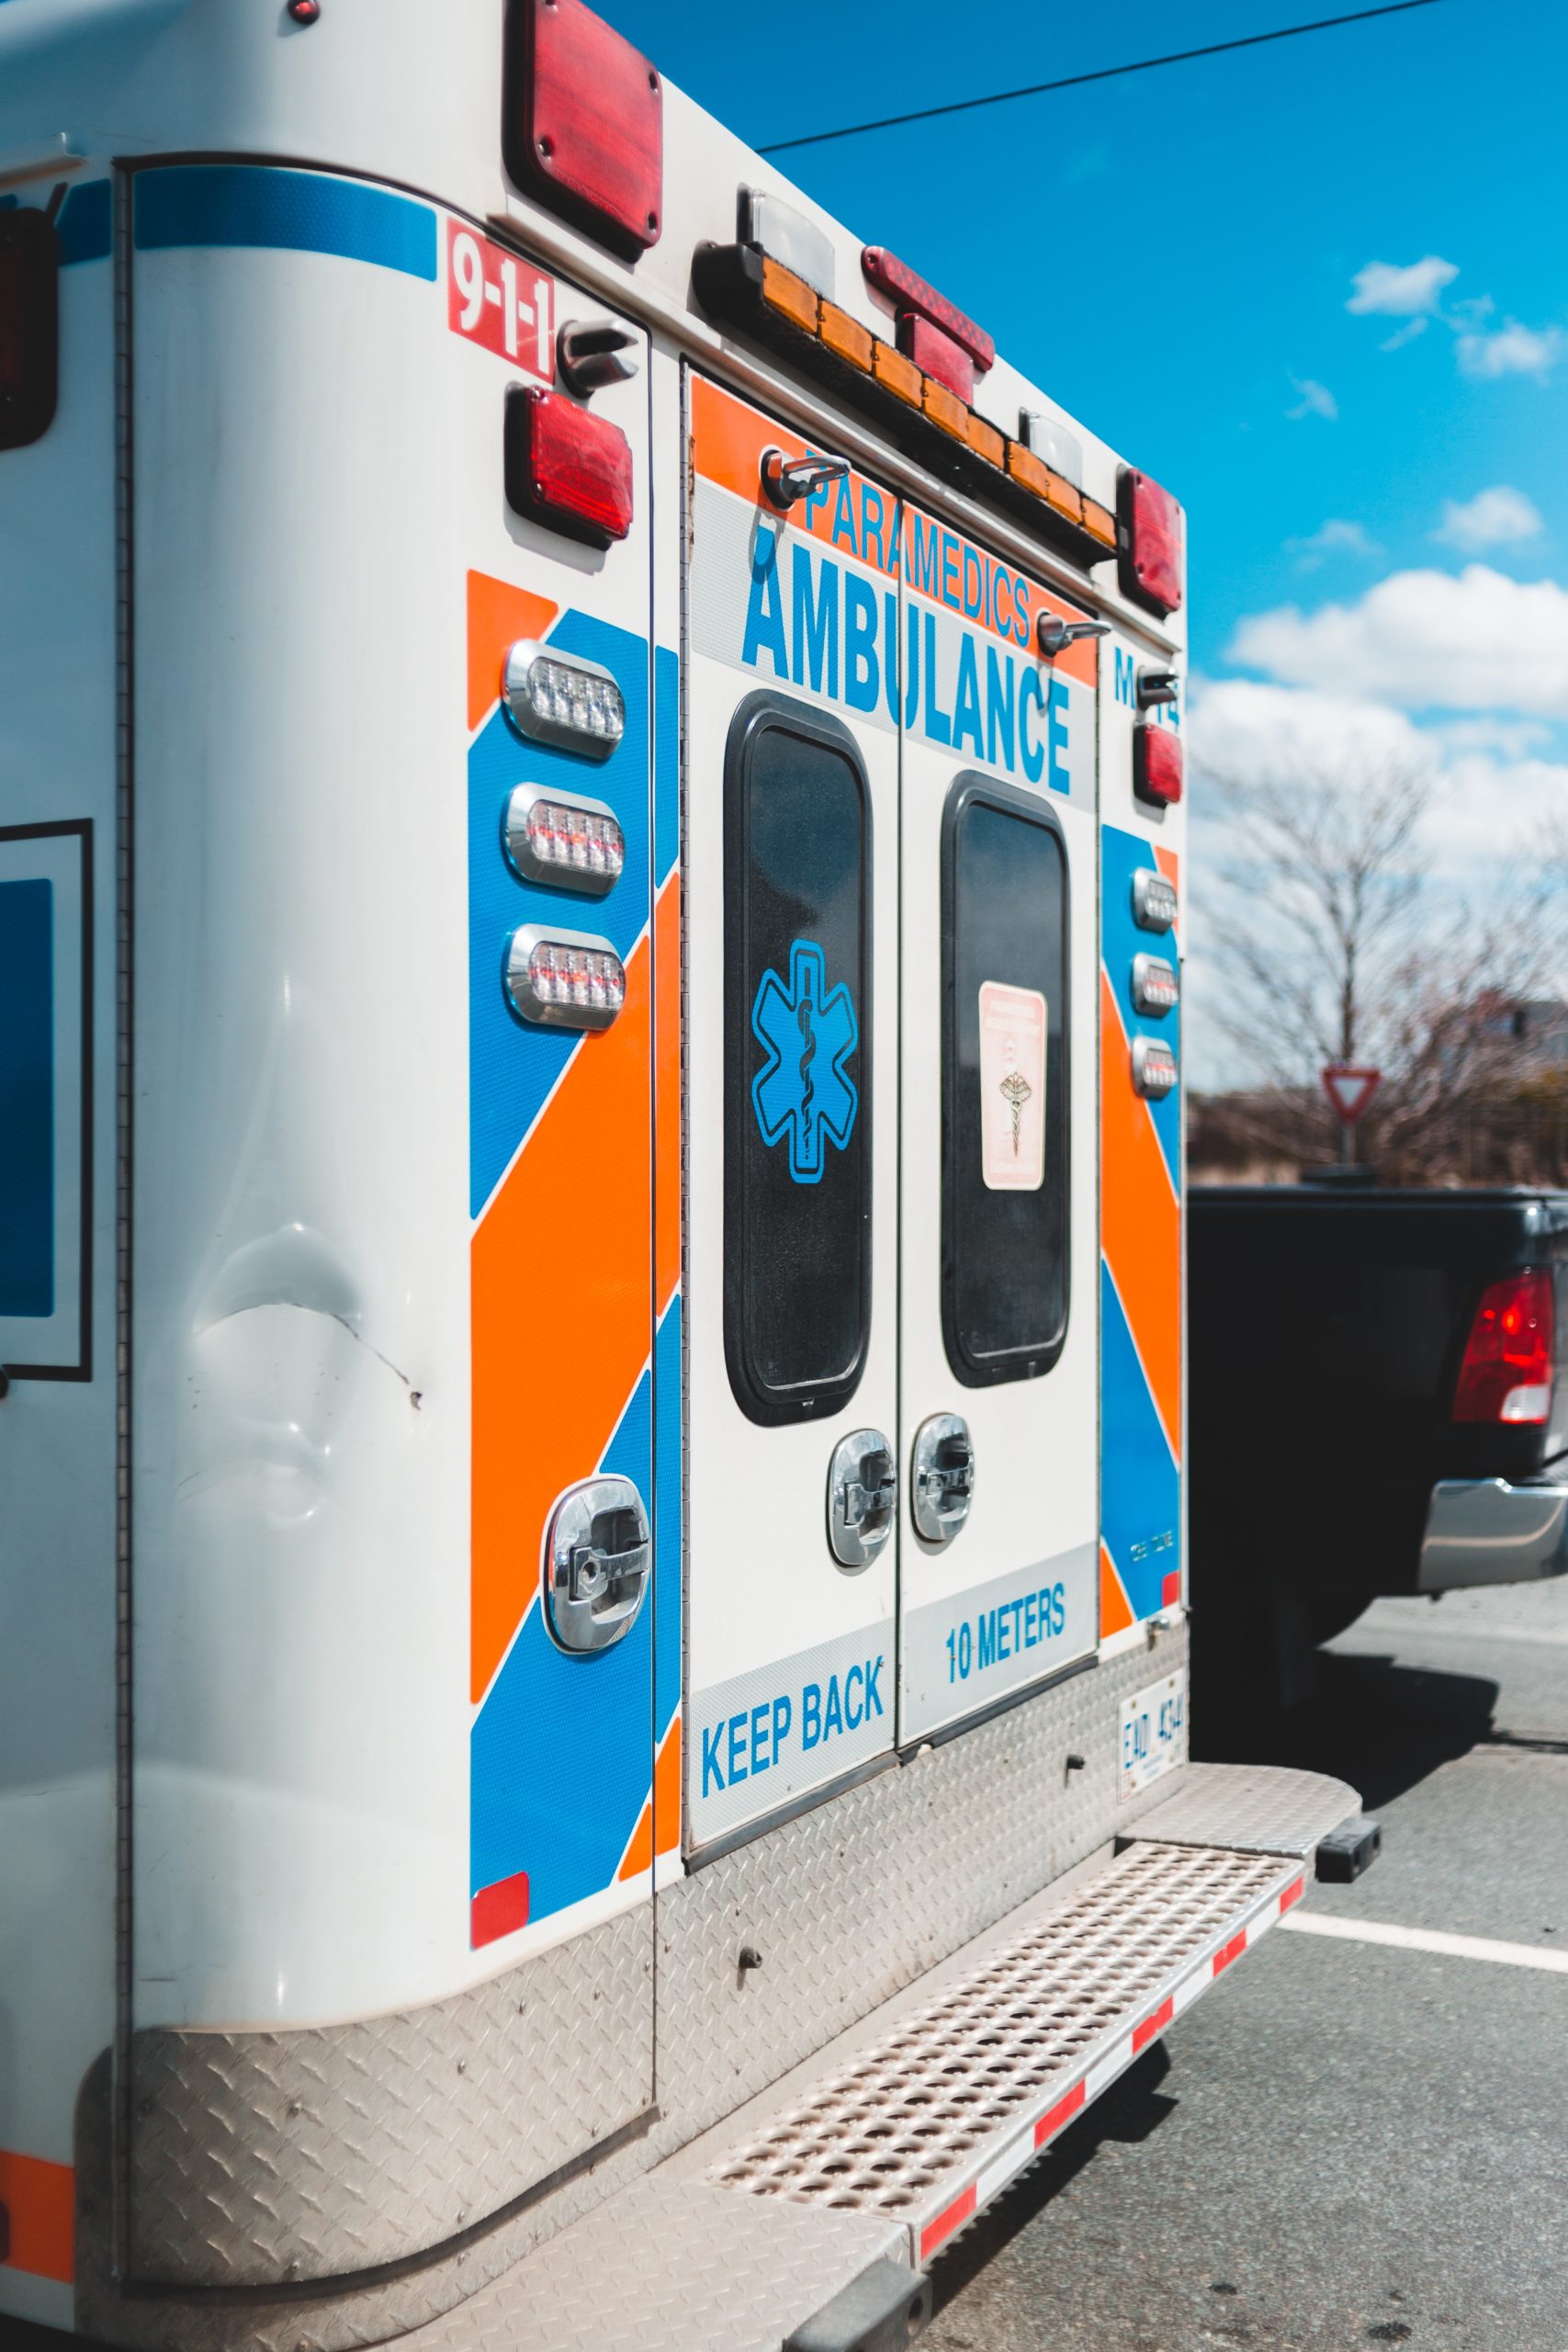 Paramedic Ambulance